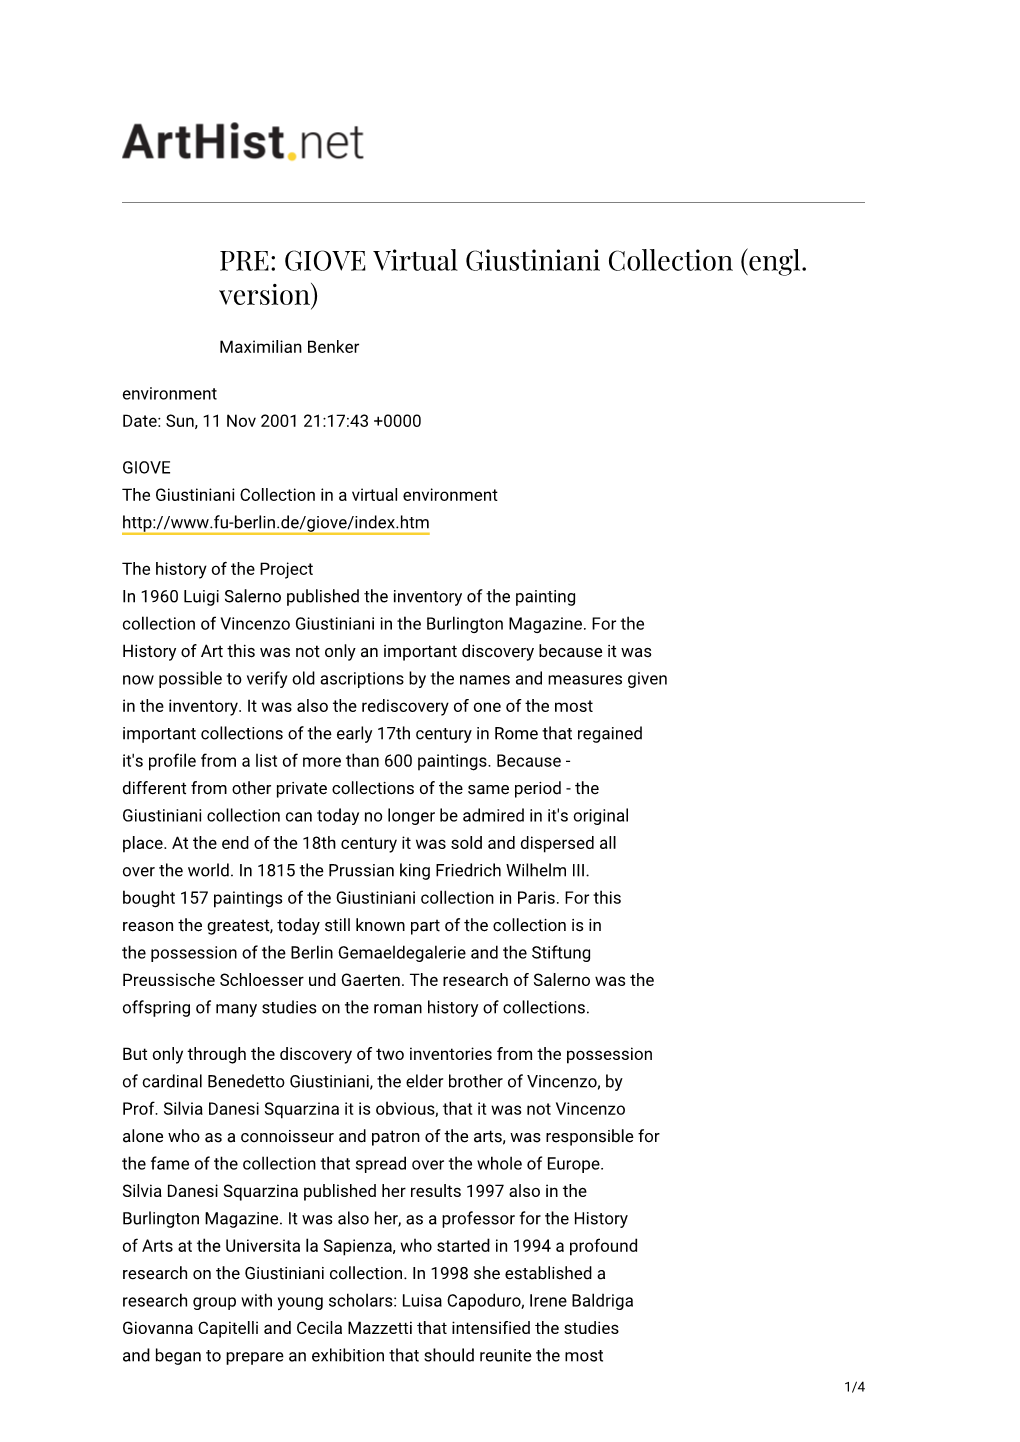 GIOVE Virtual Giustiniani Collection (Engl